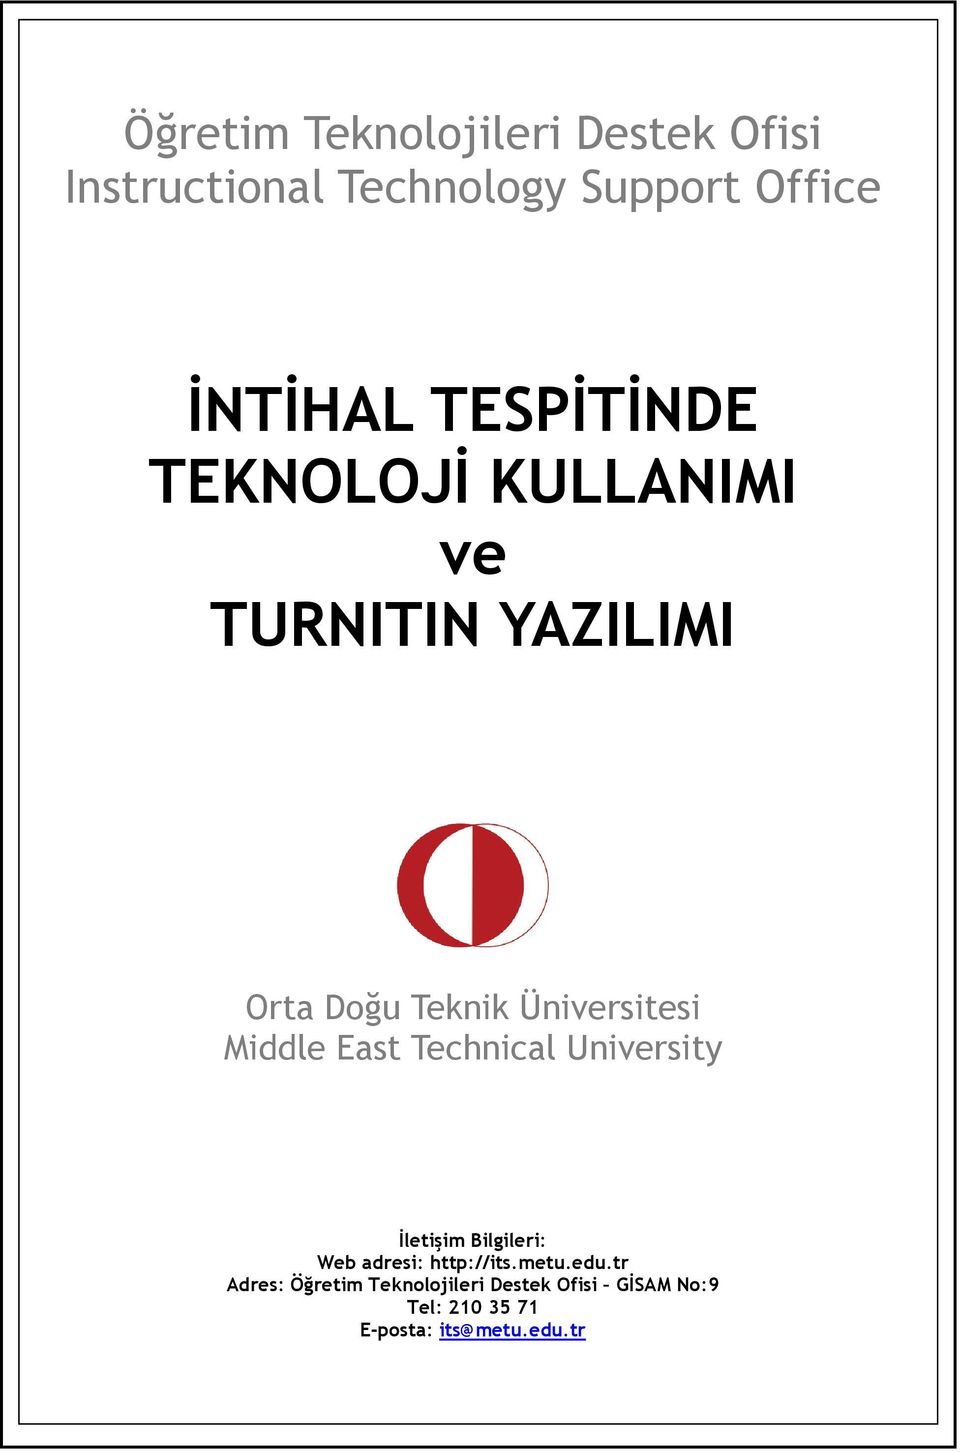 Technical University Đletişim Bilgileri: Web adresi: http://its.metu.edu.